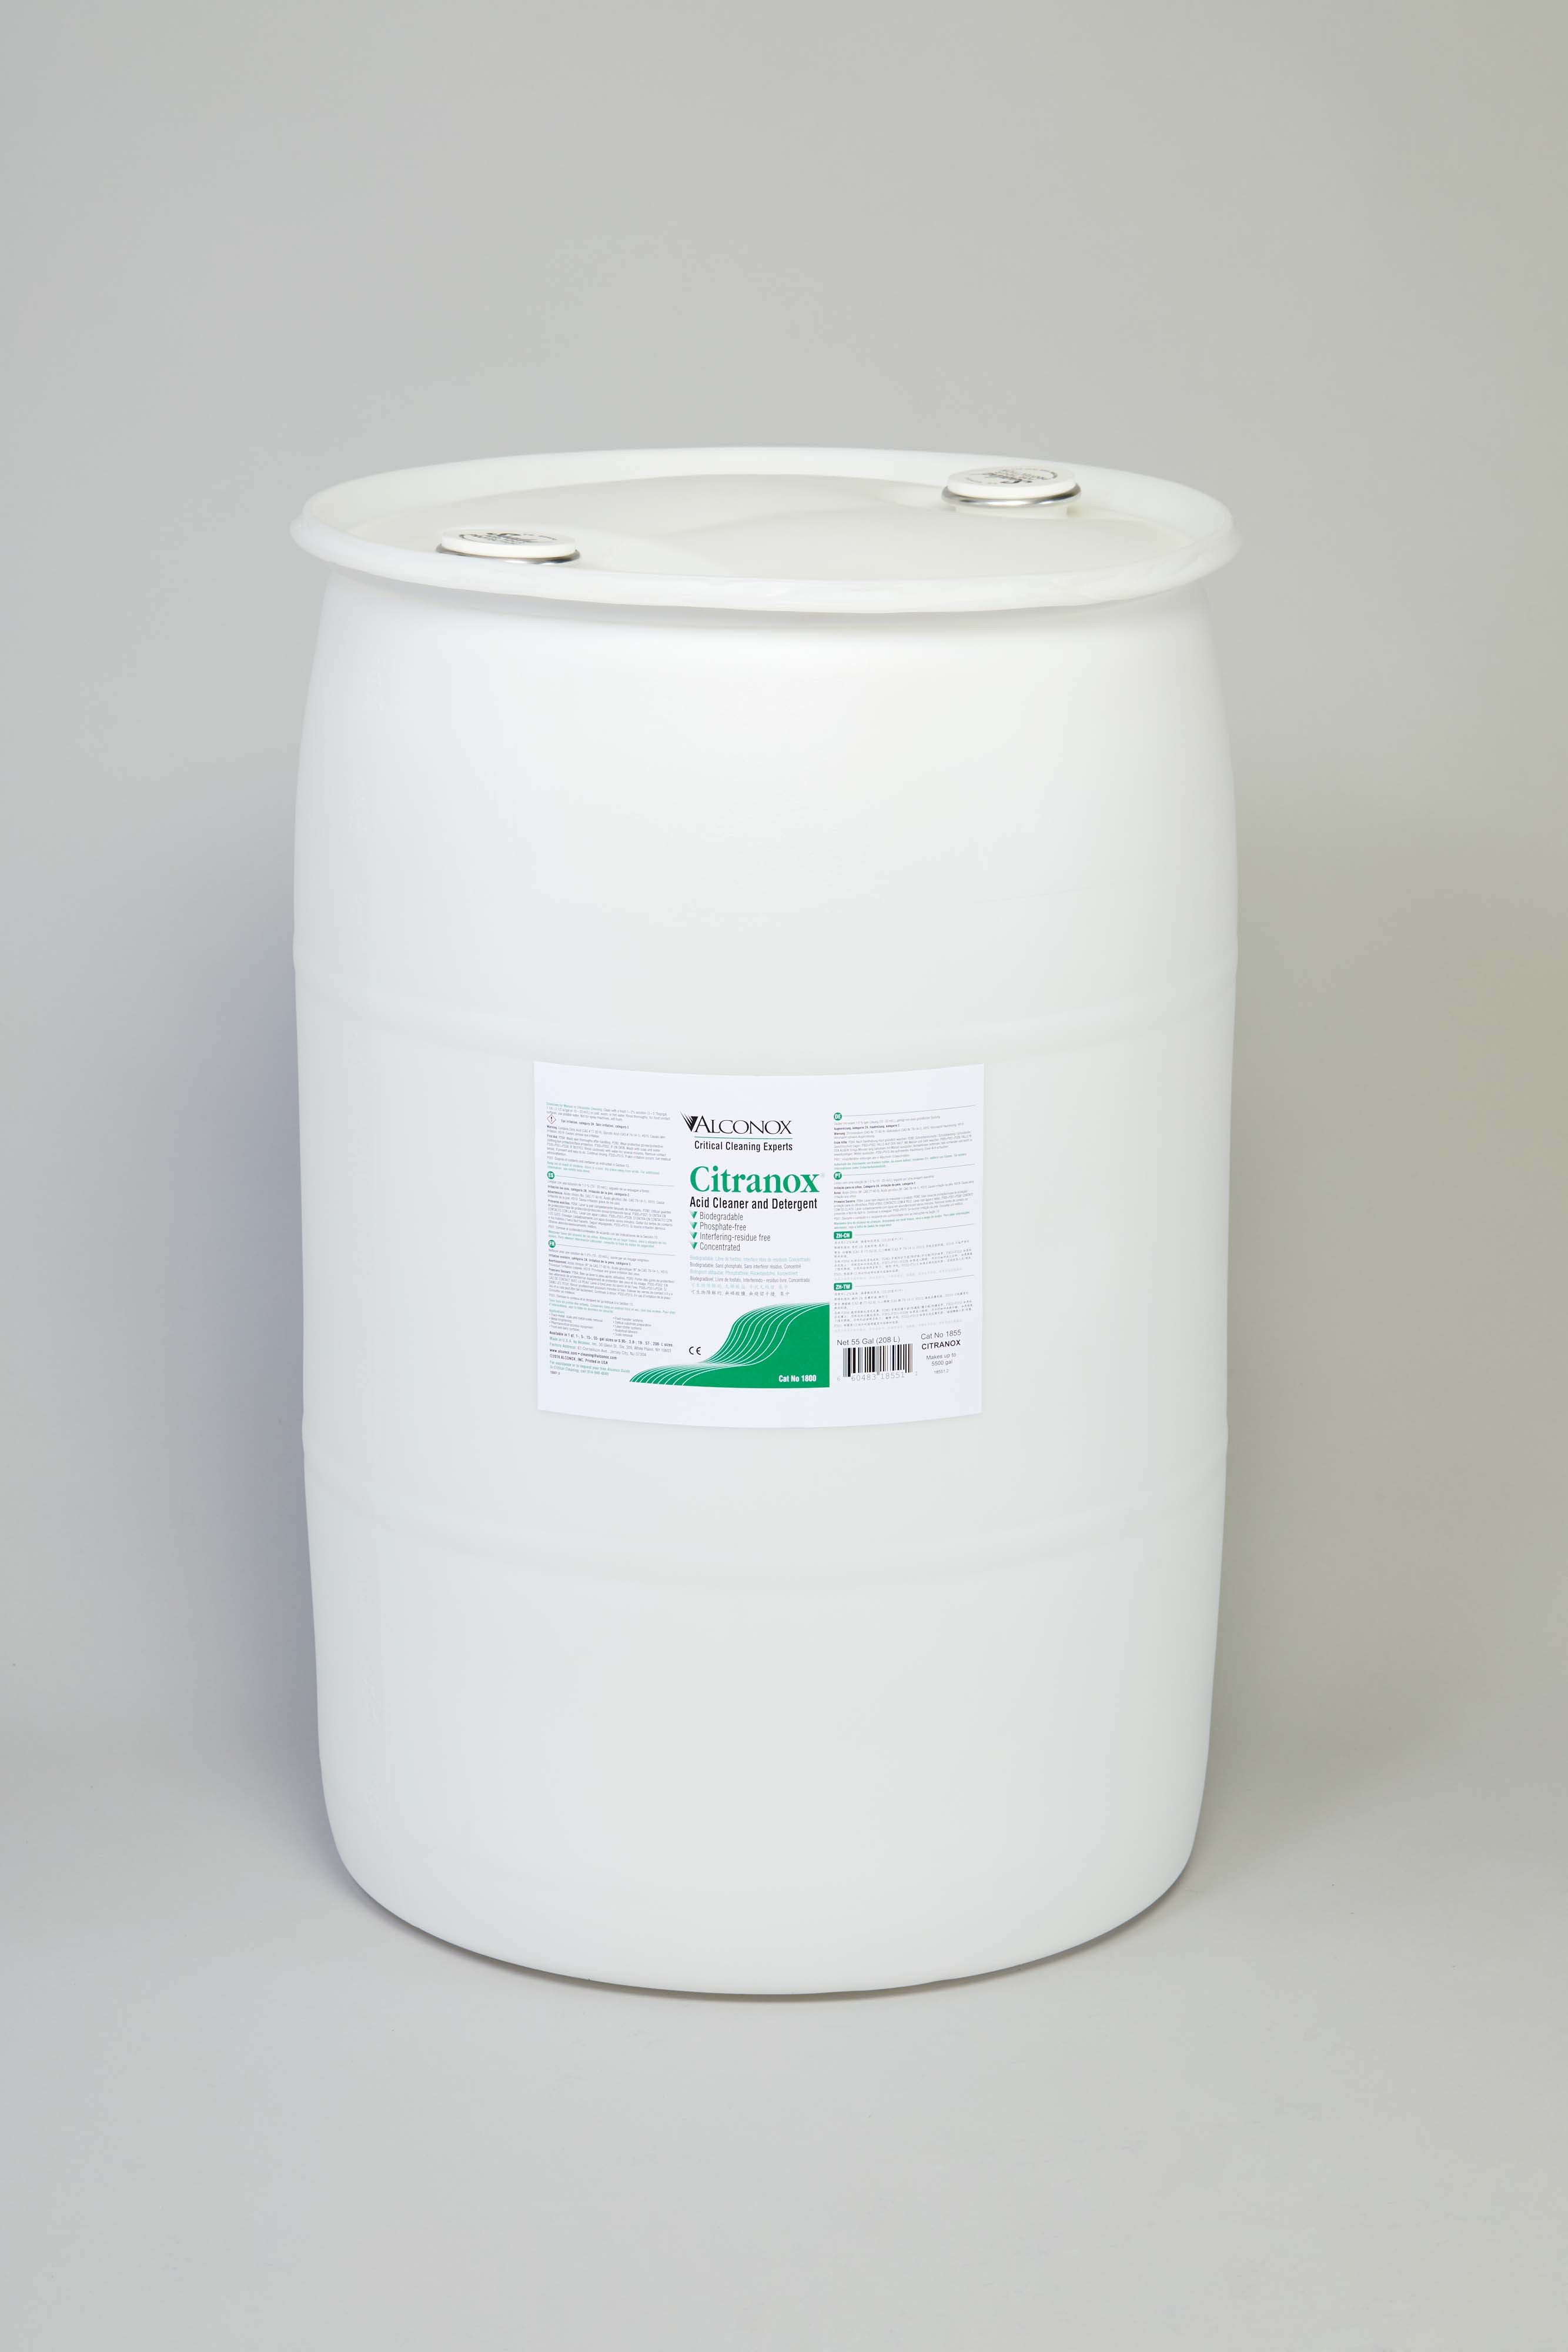 Citranox Liquid Acid Cleaner and Detergent - 55 gal.